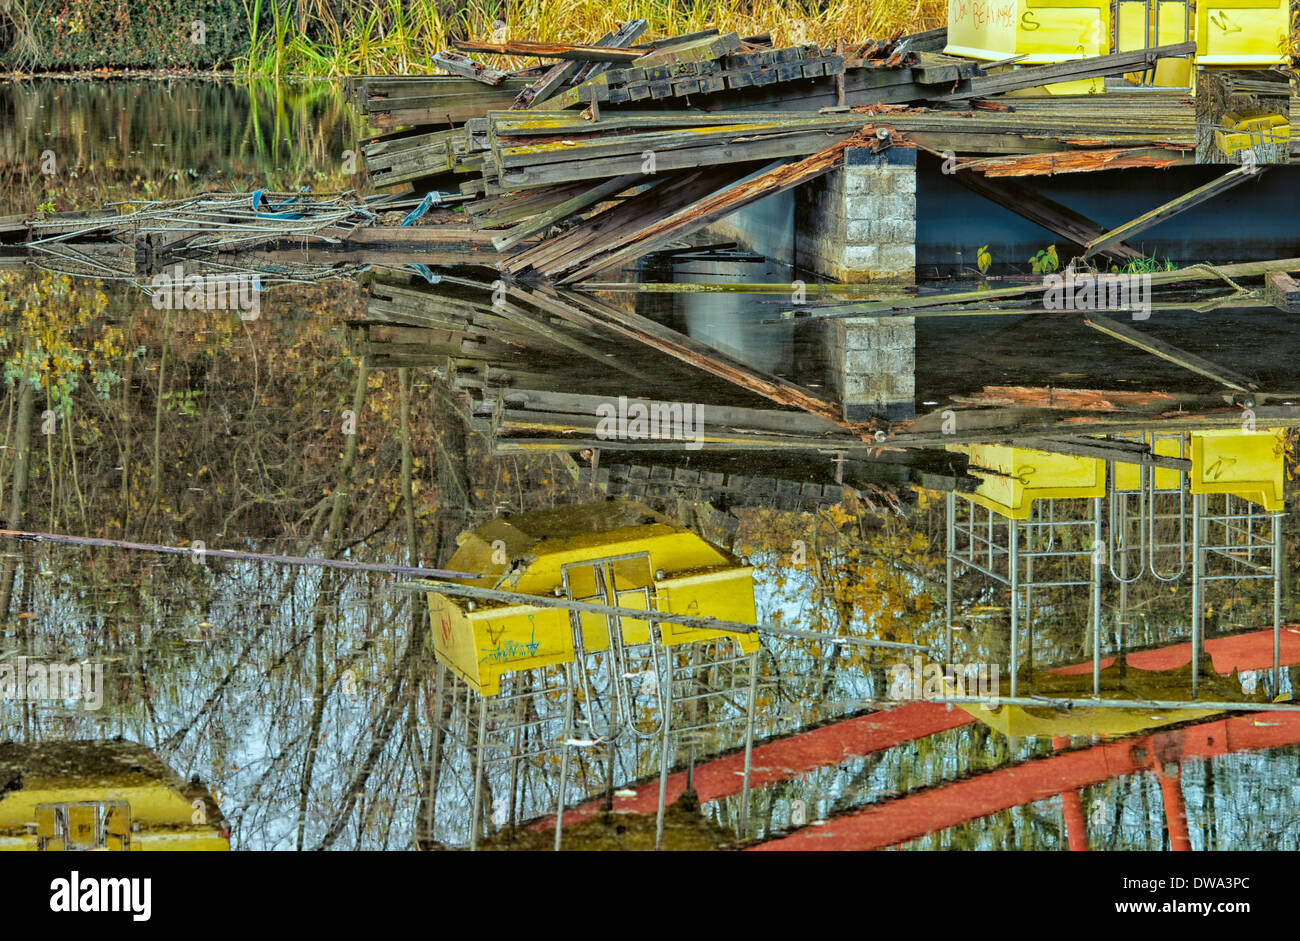 Am Spreepark Plänterwald Berlino Germania - Abstract i dettagli di alcune delle icone di strutture abbandonate a sinistra per decadimento. Foto Stock